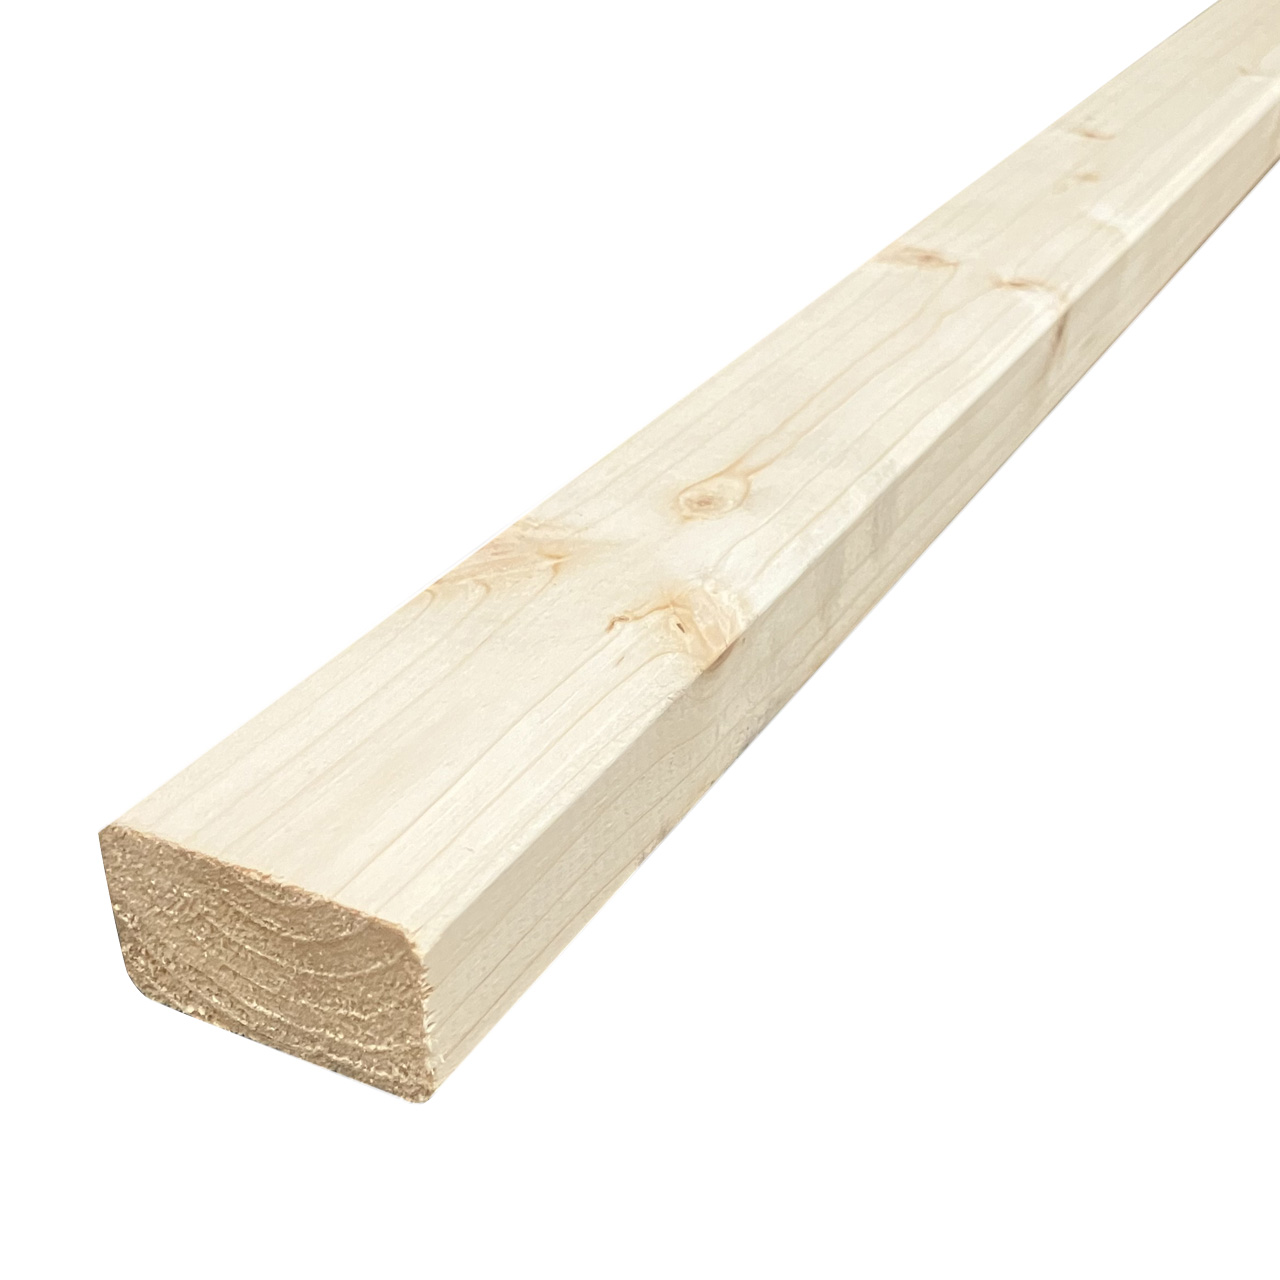 Rahmenholz Fichte Gehobelt 45 x 45 mm L=300 cm